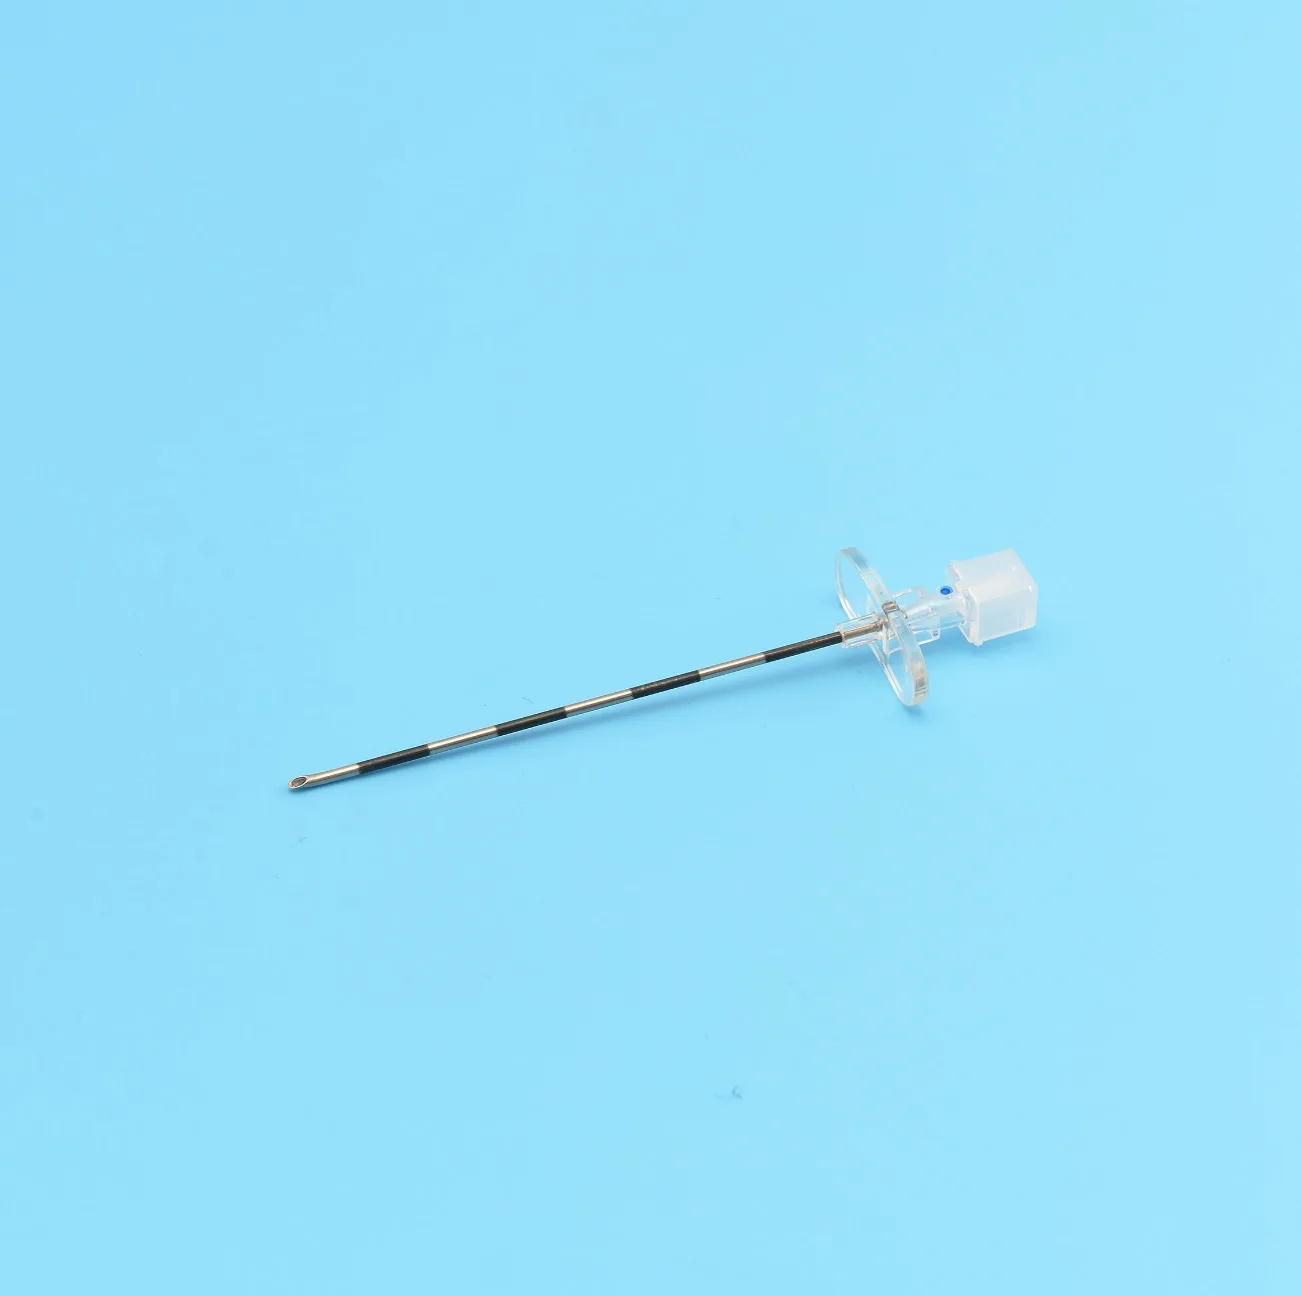 Игла 16 мм. Набор для эпидуральной анестезии epidural Kit "система II" g16 (вложение 60). Игла 18 g 90. Epidural Kit Zhejiang Runqiang Medical instruments. Y-коннектор гемостатический, с регулируемым клапаном по типу Tuohy-borst.